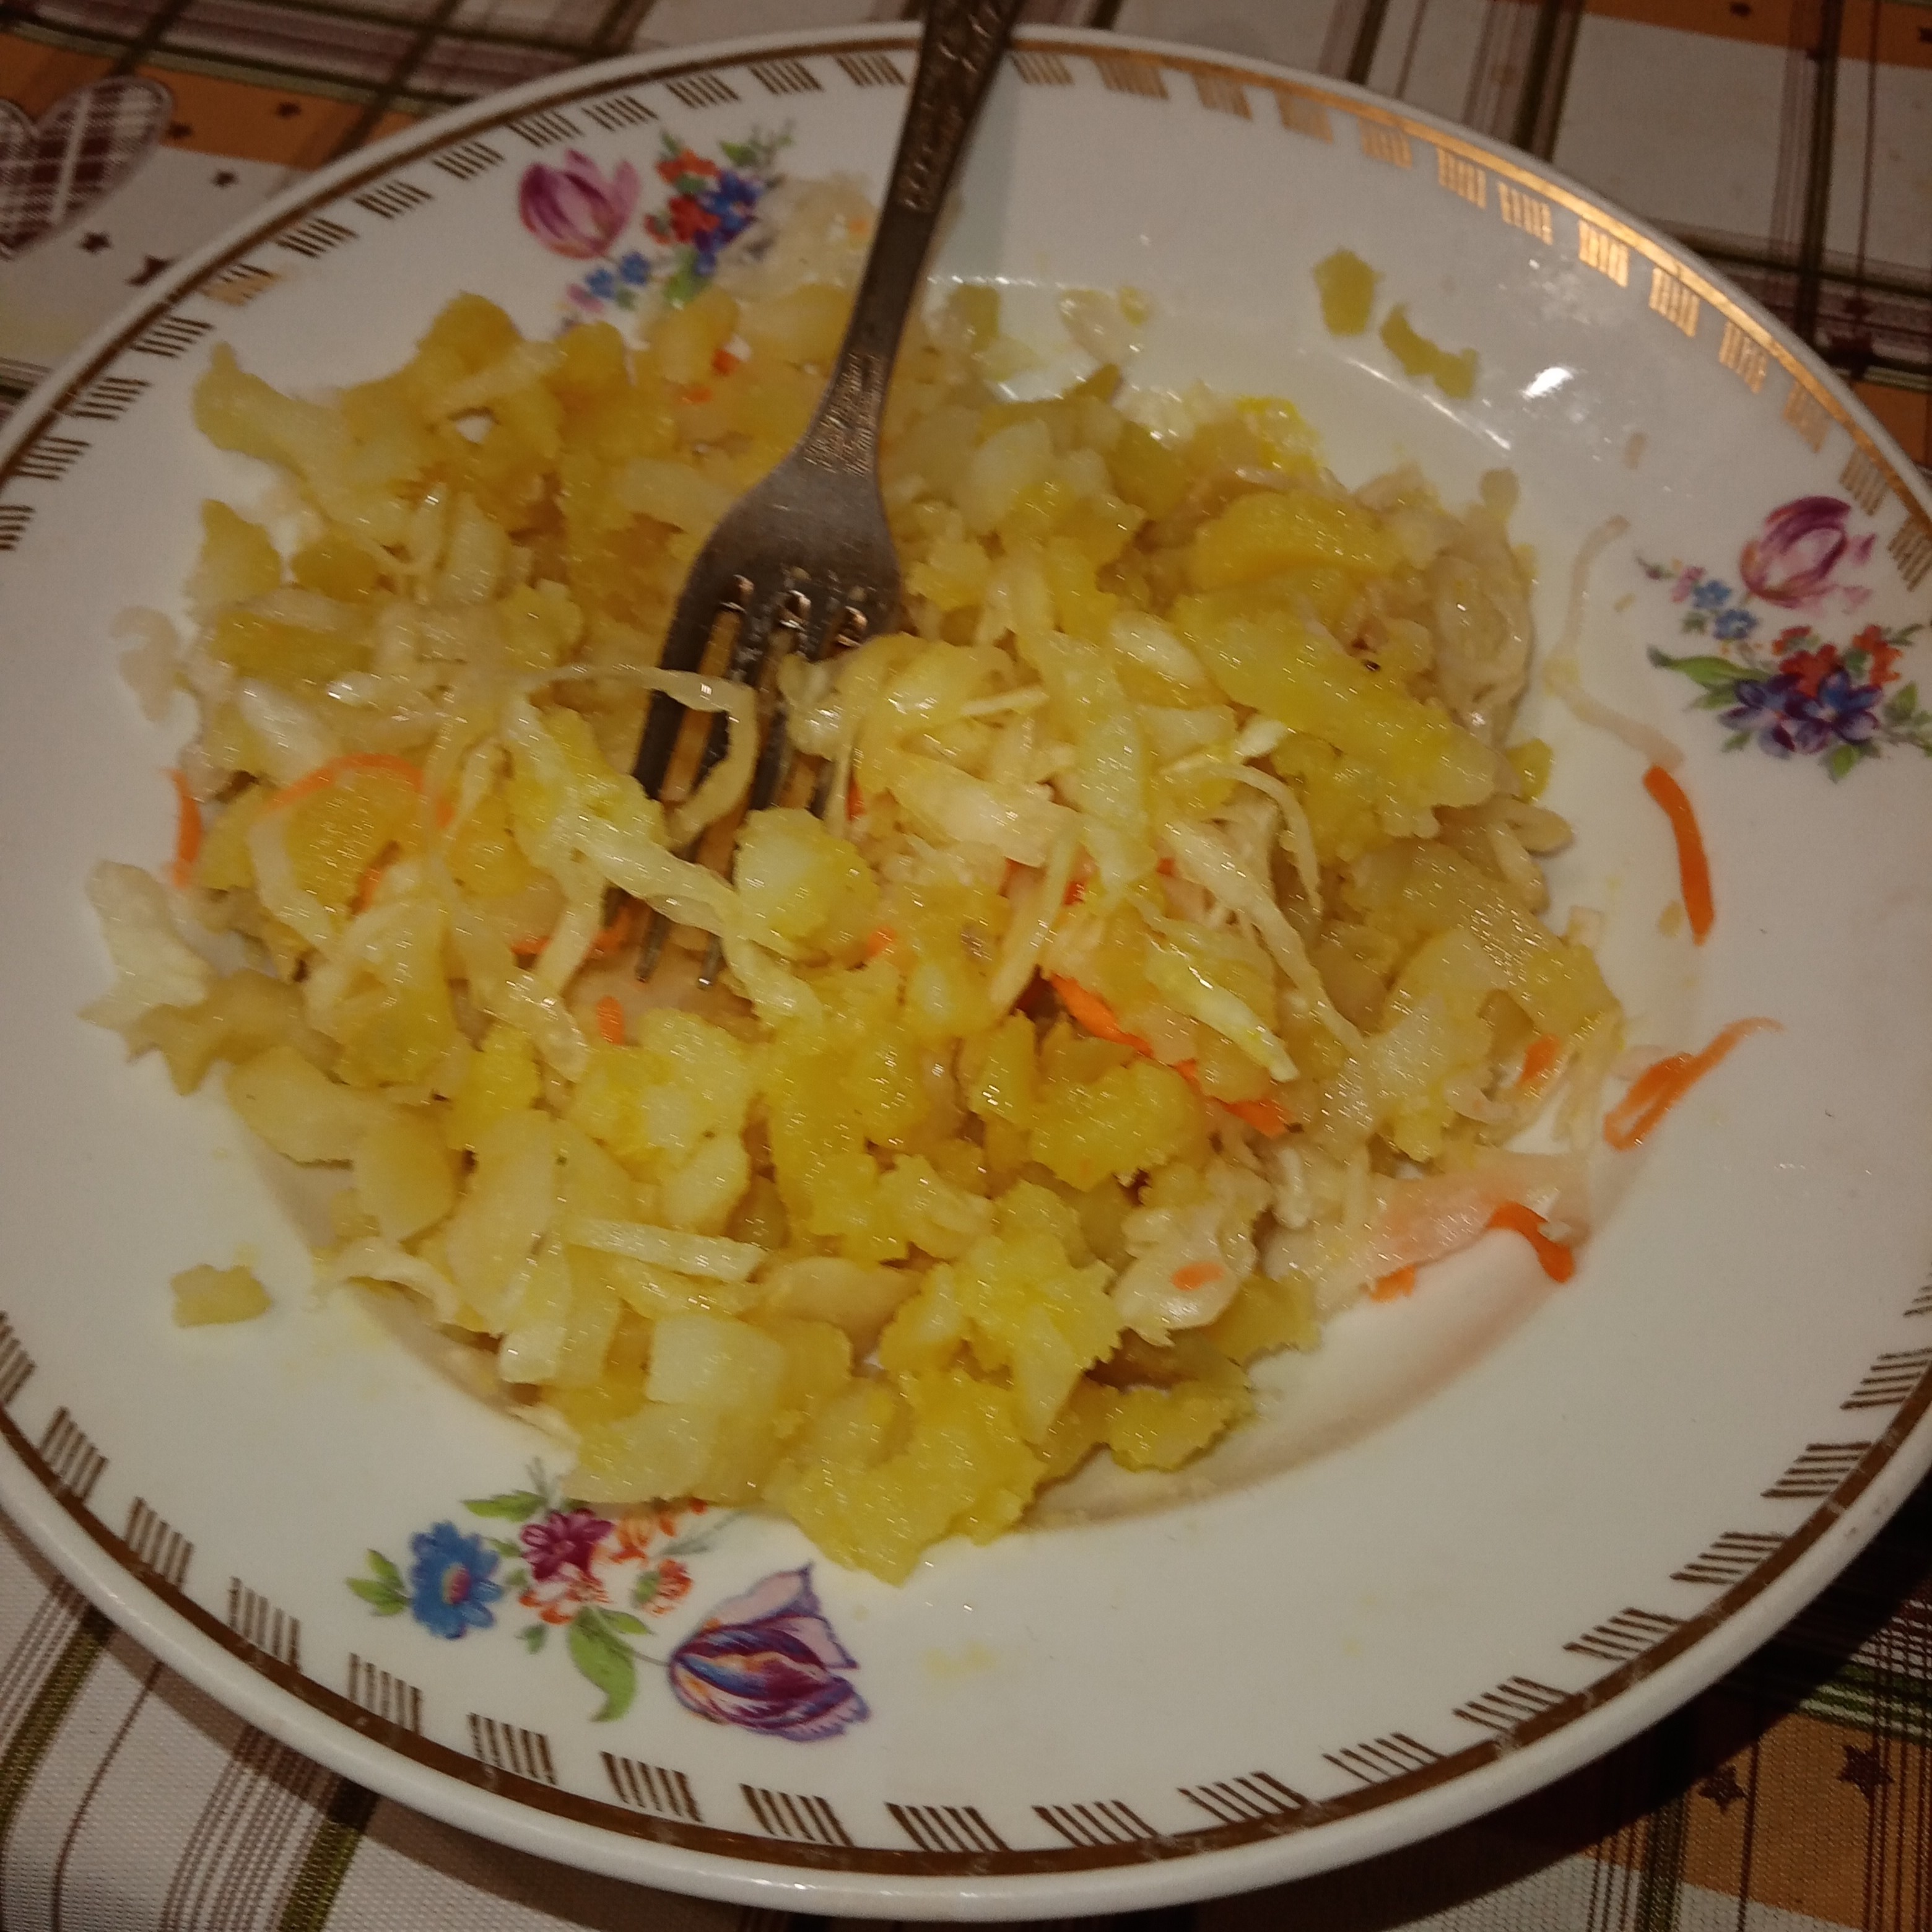 Салатик из маринованной капусты "Деревенский"